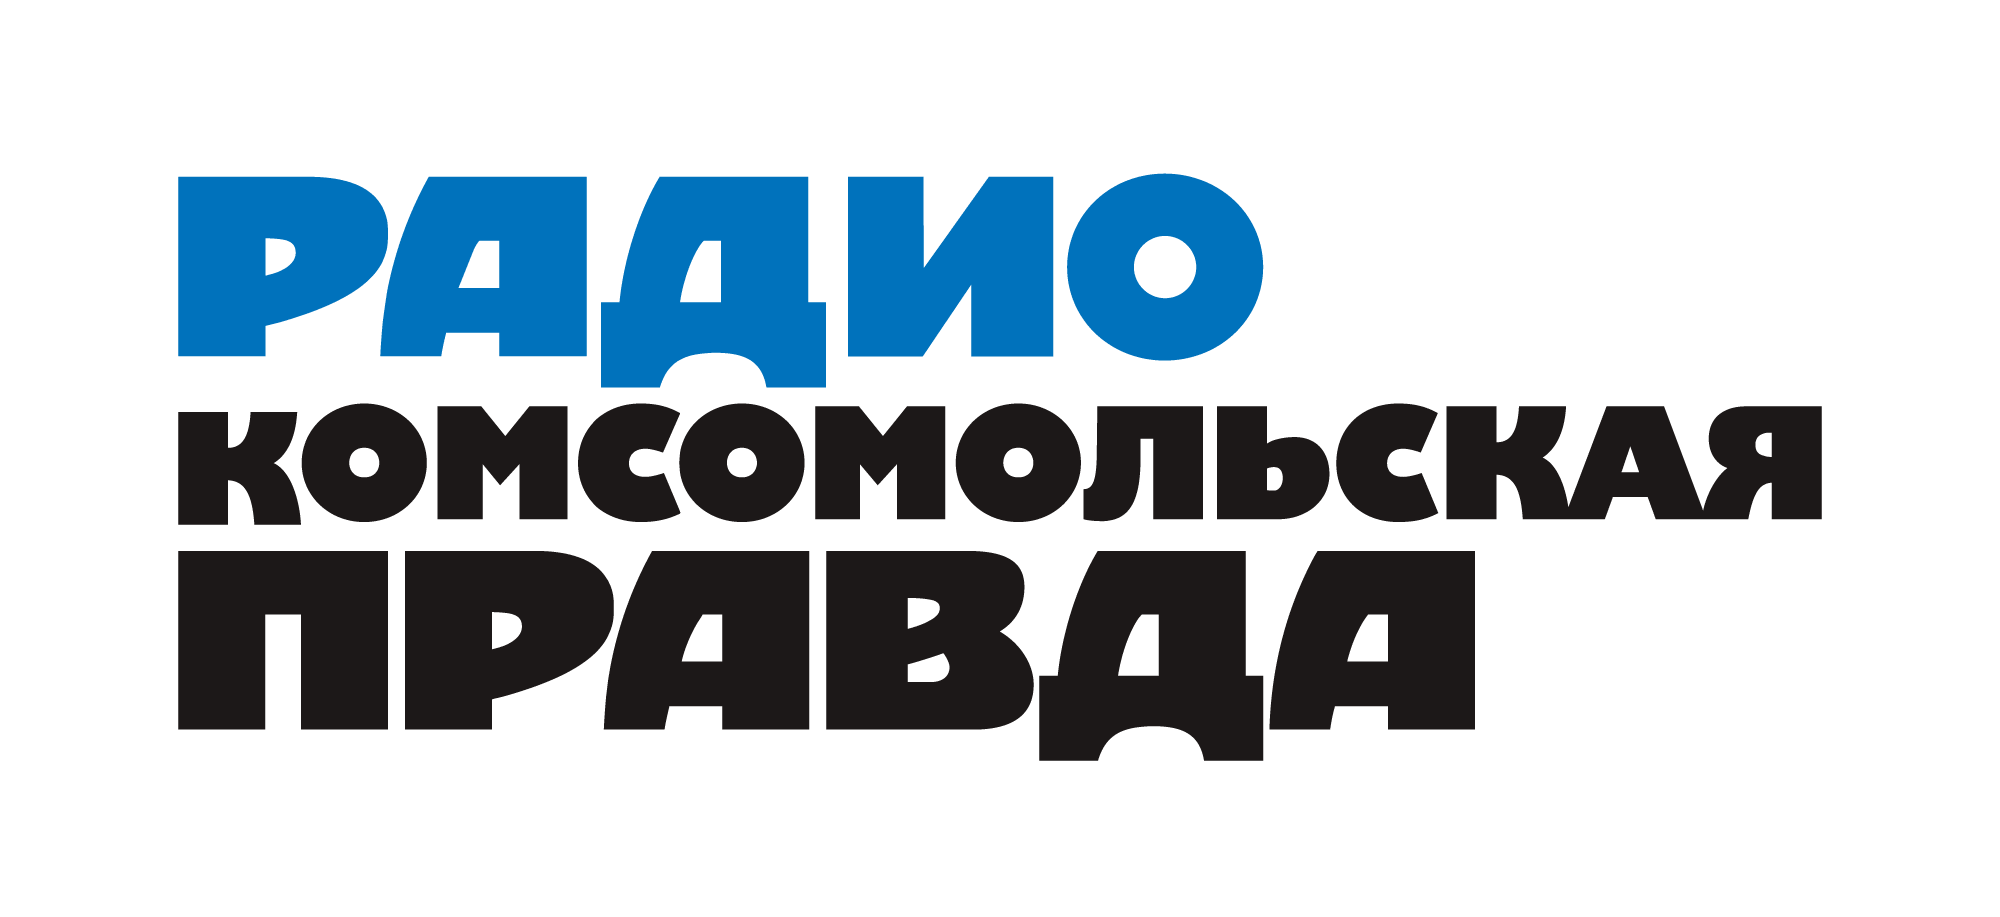 Раземщение рекламы Комсомольская правда 105.7FM, г.Ставрополь